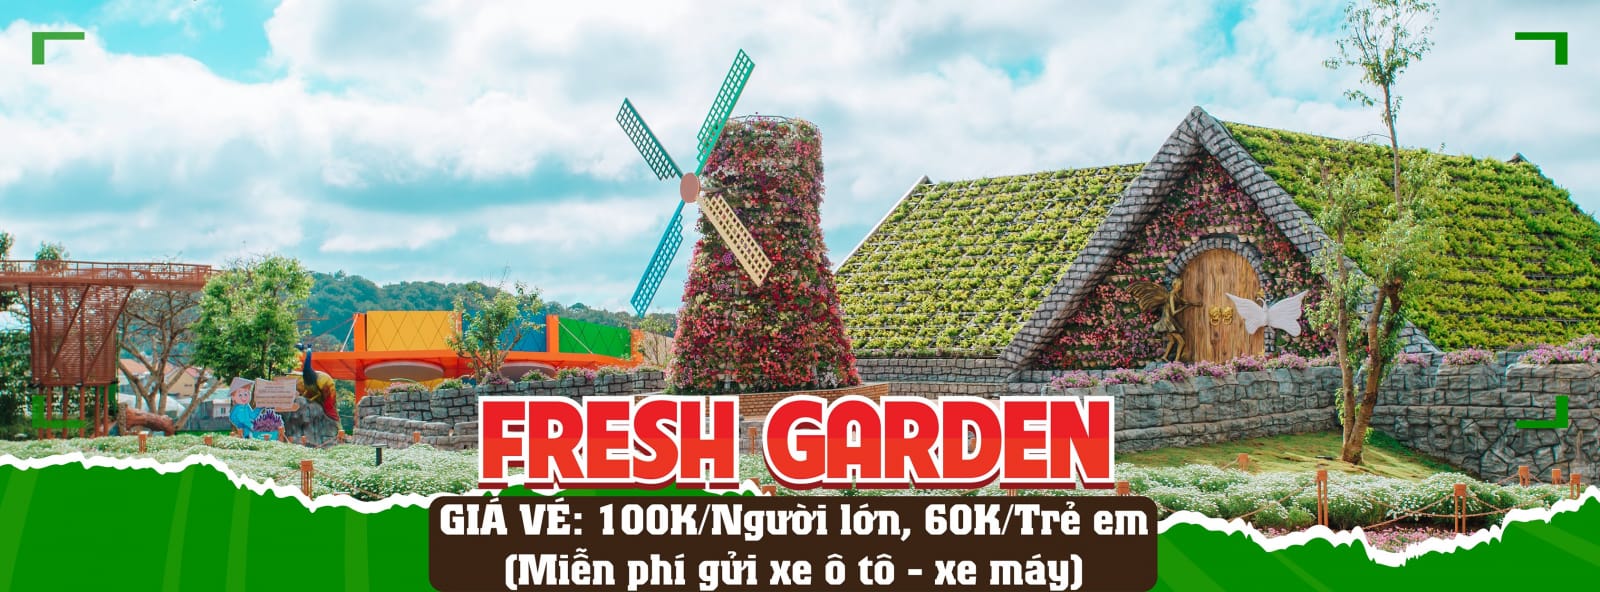 Fresh Garden Dalat – Vườn hoa khổng lồ khoe sắc rực rỡ giữa lòng Đà Lạt 2